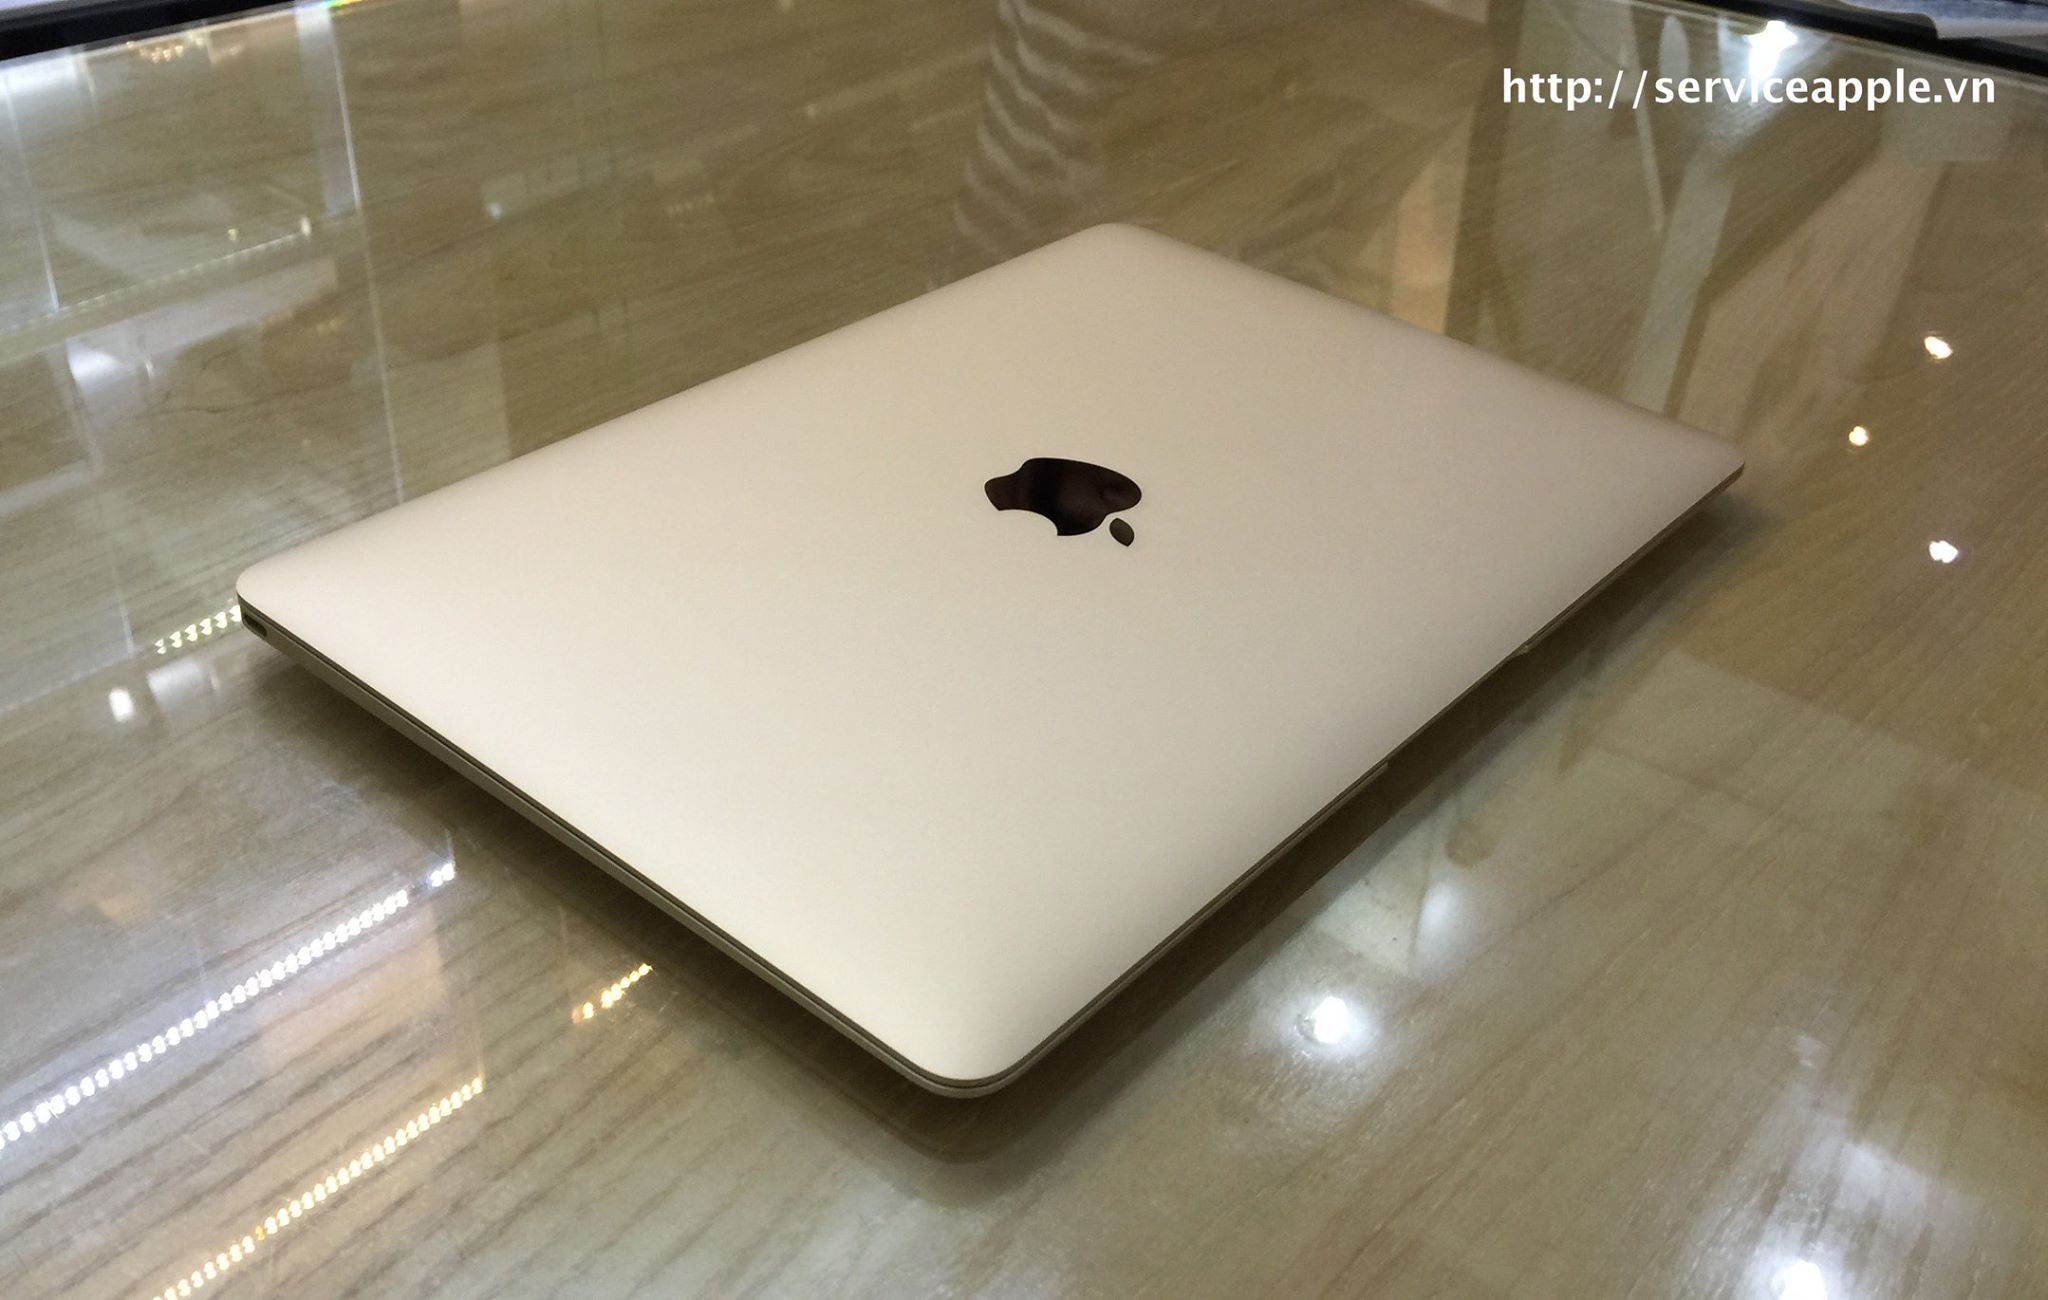 The New MacBook 12 inch GOLD - MK4N2